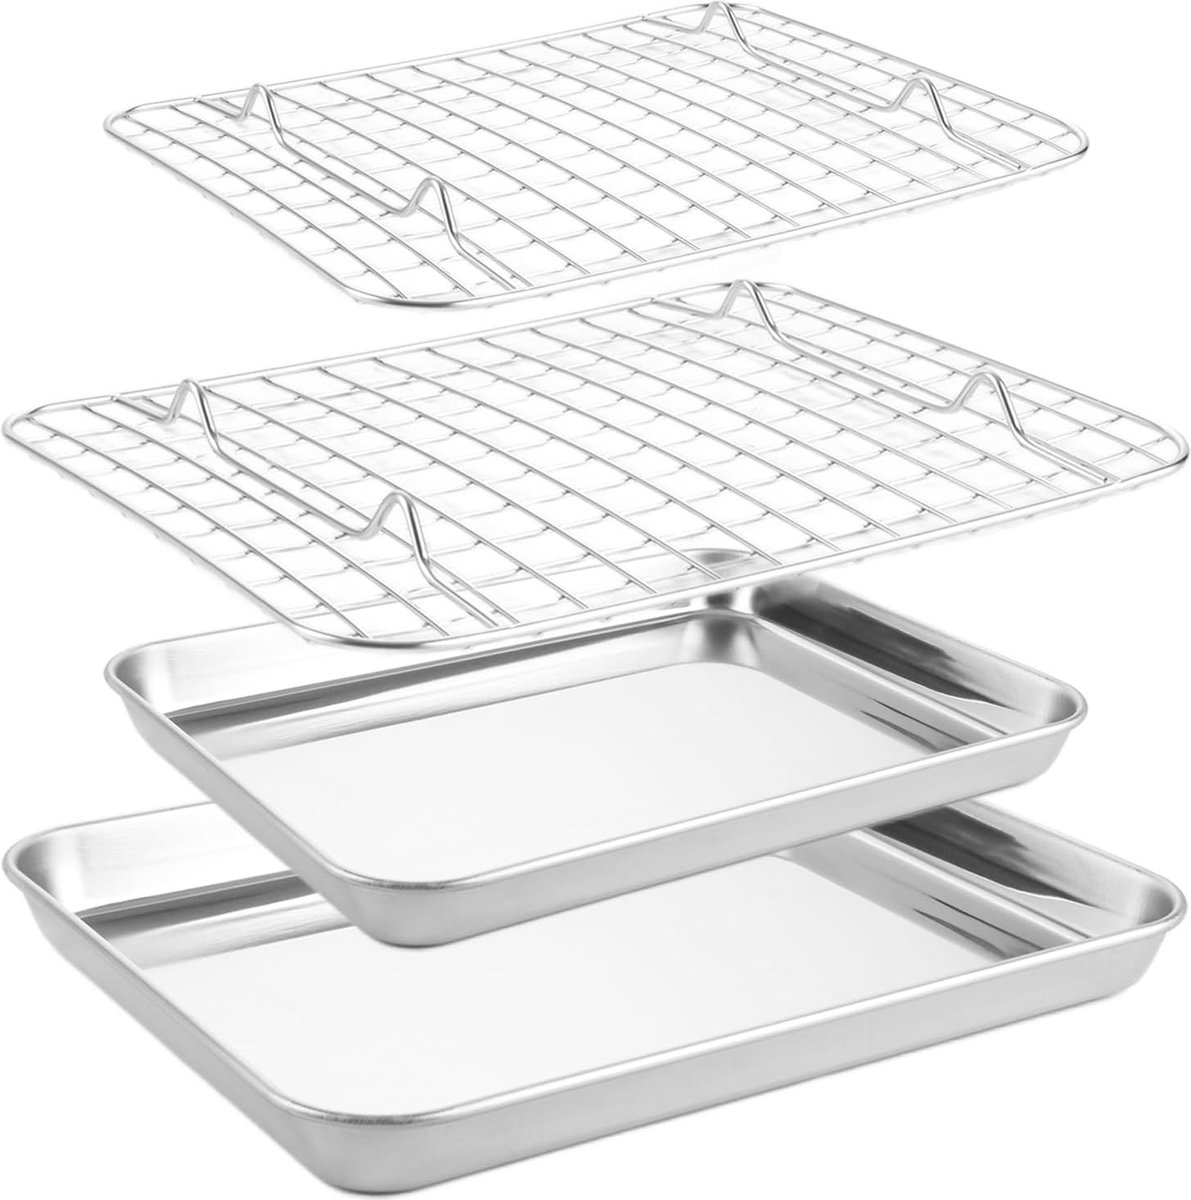 2 stuks bakplaten met afkoelrooster, 26,5 x 20,5 x 2,5 cm, roestvrijstalen taartschaal en taartrooster, rechthoekige ovenplaat, braden voor bakken, braden, koelen, vaatwasmachinebestendig